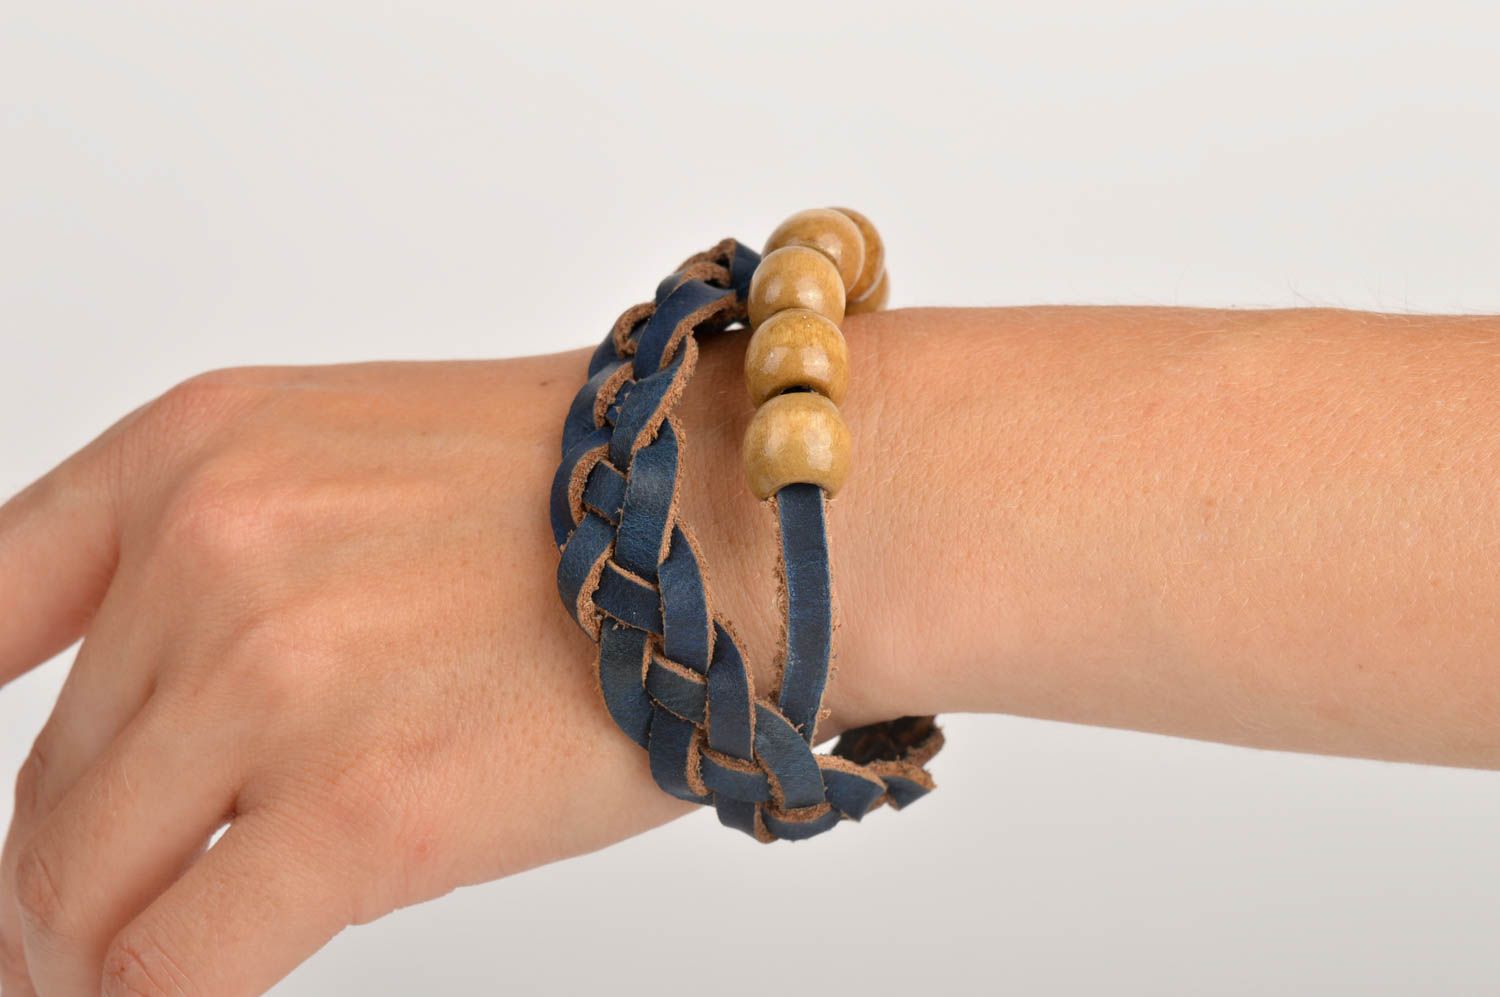 Handmade bracelet designer accessory gift ideas leather bracelet for women photo 2